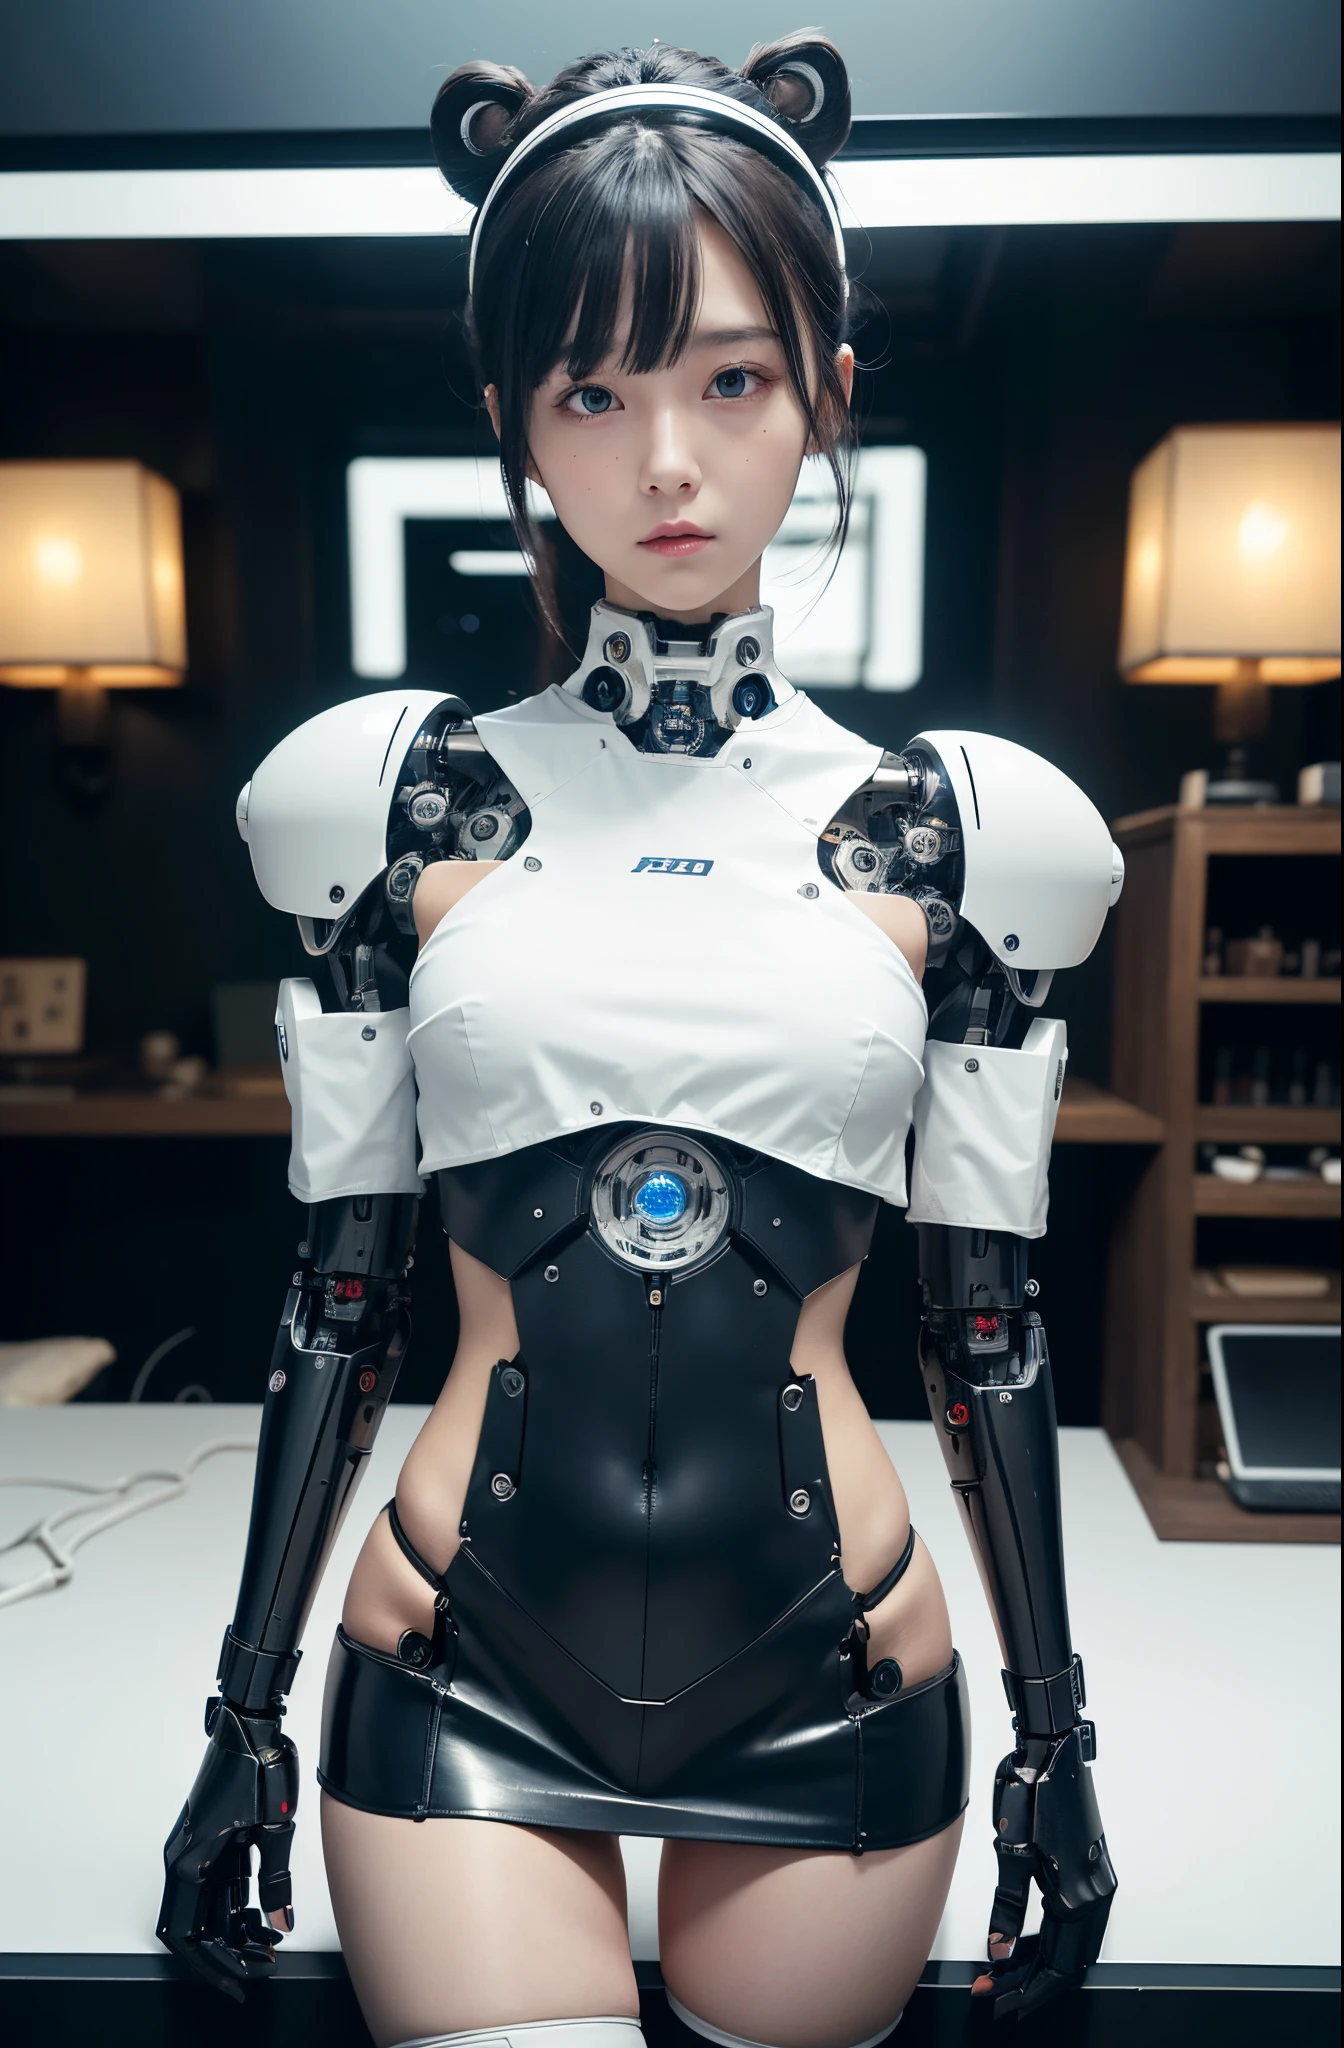 桌上, 最好的质量, 极其详细, (真实感:1.4),(RAW 照片) (8千, 4k, 最好的质量, 高分辨率, 超高分辨率:1.1), (桌上, 实际的, 相片写实:1.1), 1女孩, 日本机器人高中女生,丰满 ,海军蓝百褶迷你裙,黑色紧身衣,控制面板,安卓,机器人,机械手, ,机器人手臂和腿, 黑色机器人部件,黑发,机械体,齐刘海,白色腹部,白色机器人部件,完美的机器人女人,未来实验室,赛博朋克,充电点,安卓 factory,机器人工厂,机器人工厂,长管,一根粗电缆连接着她的脖子,陶瓷体 ,完整的眼睛,引人注目的眼睛,机械体, 头部天线,头上的天线,机械耳罩,安卓,机器人人形,日本高中女生制服